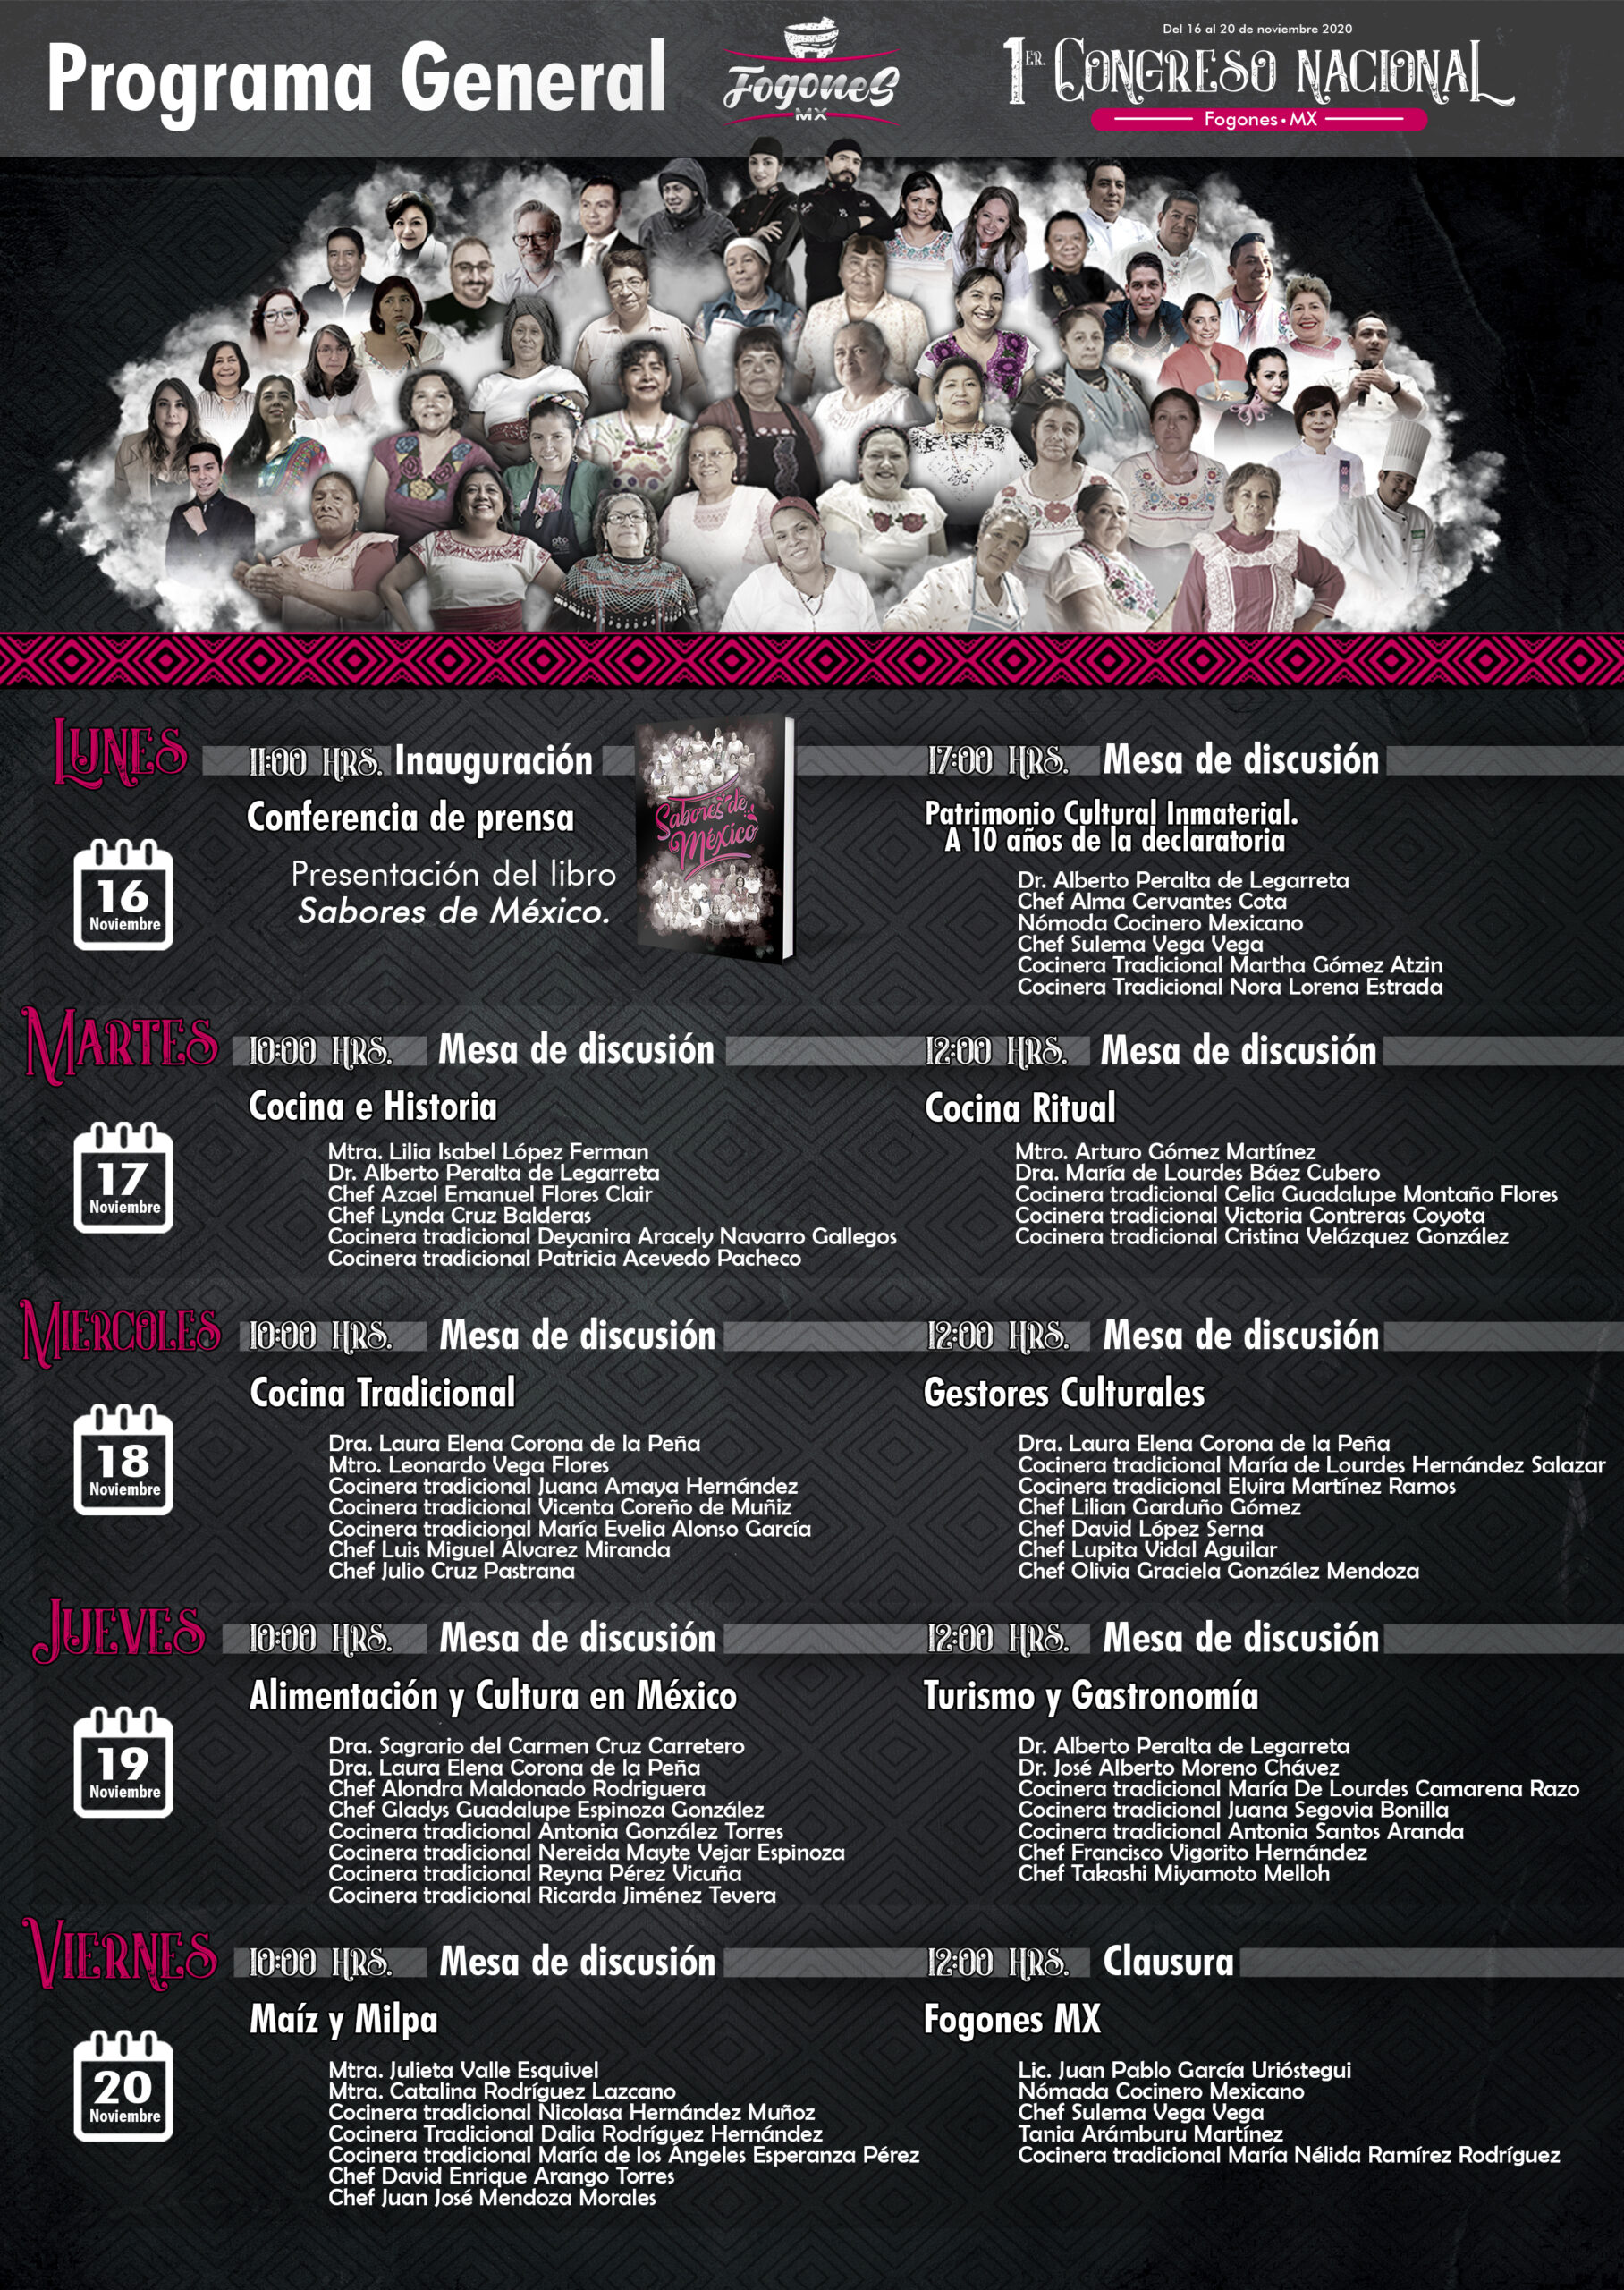 Invitan a participar en el 1er Congreso Nacional Fogones MX / Presentación del libro «Sabores de México»